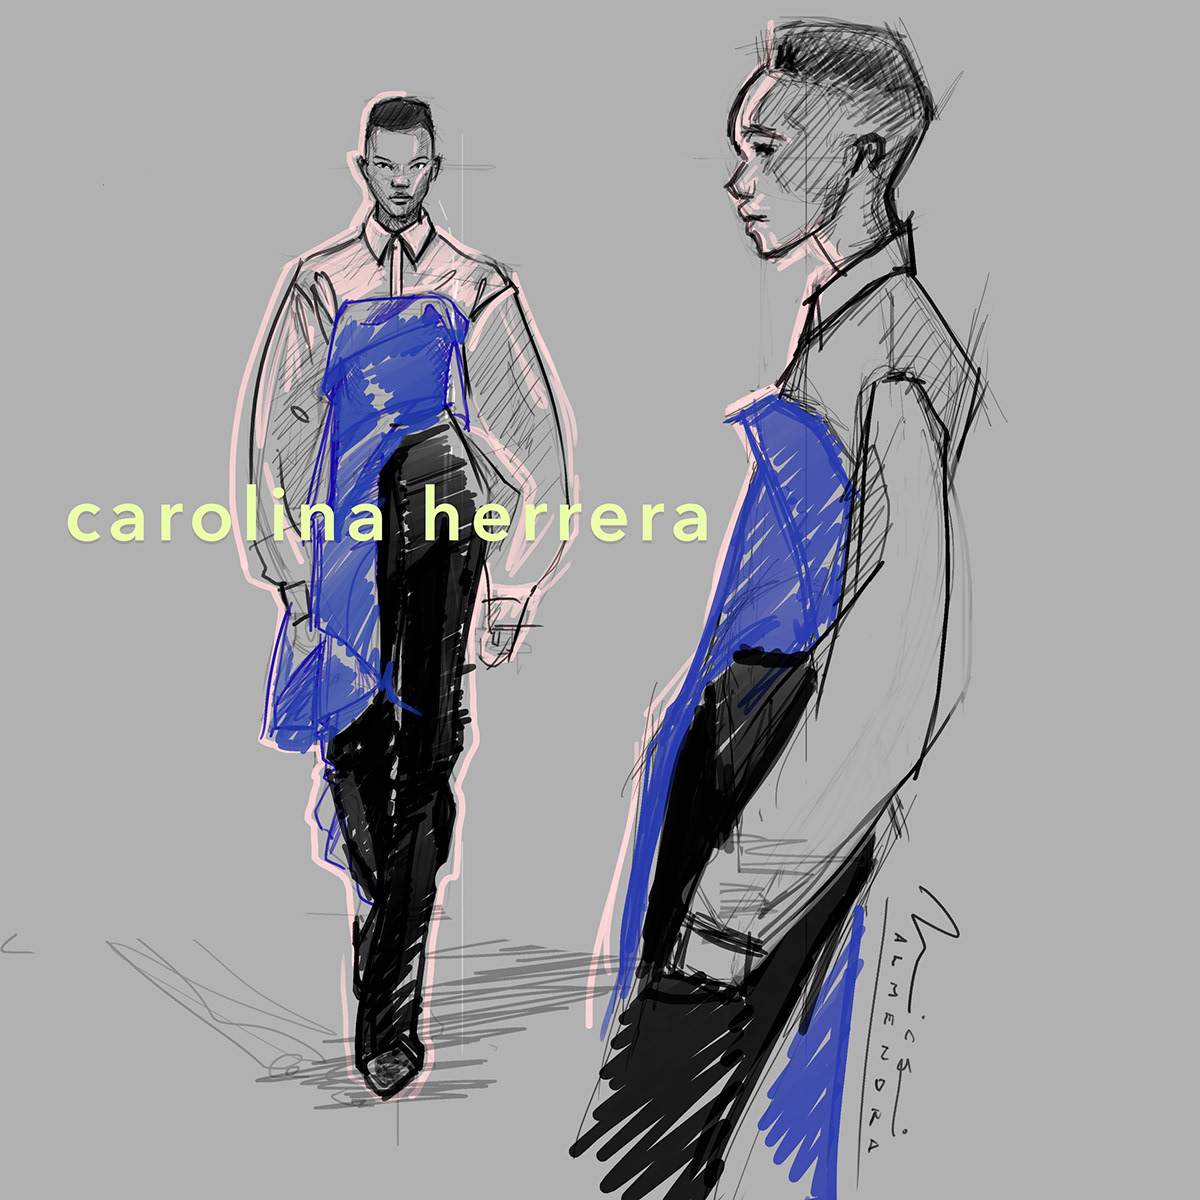 blckgirl carolinaherrera2020 fashionillustration ilustraciondemoda summer